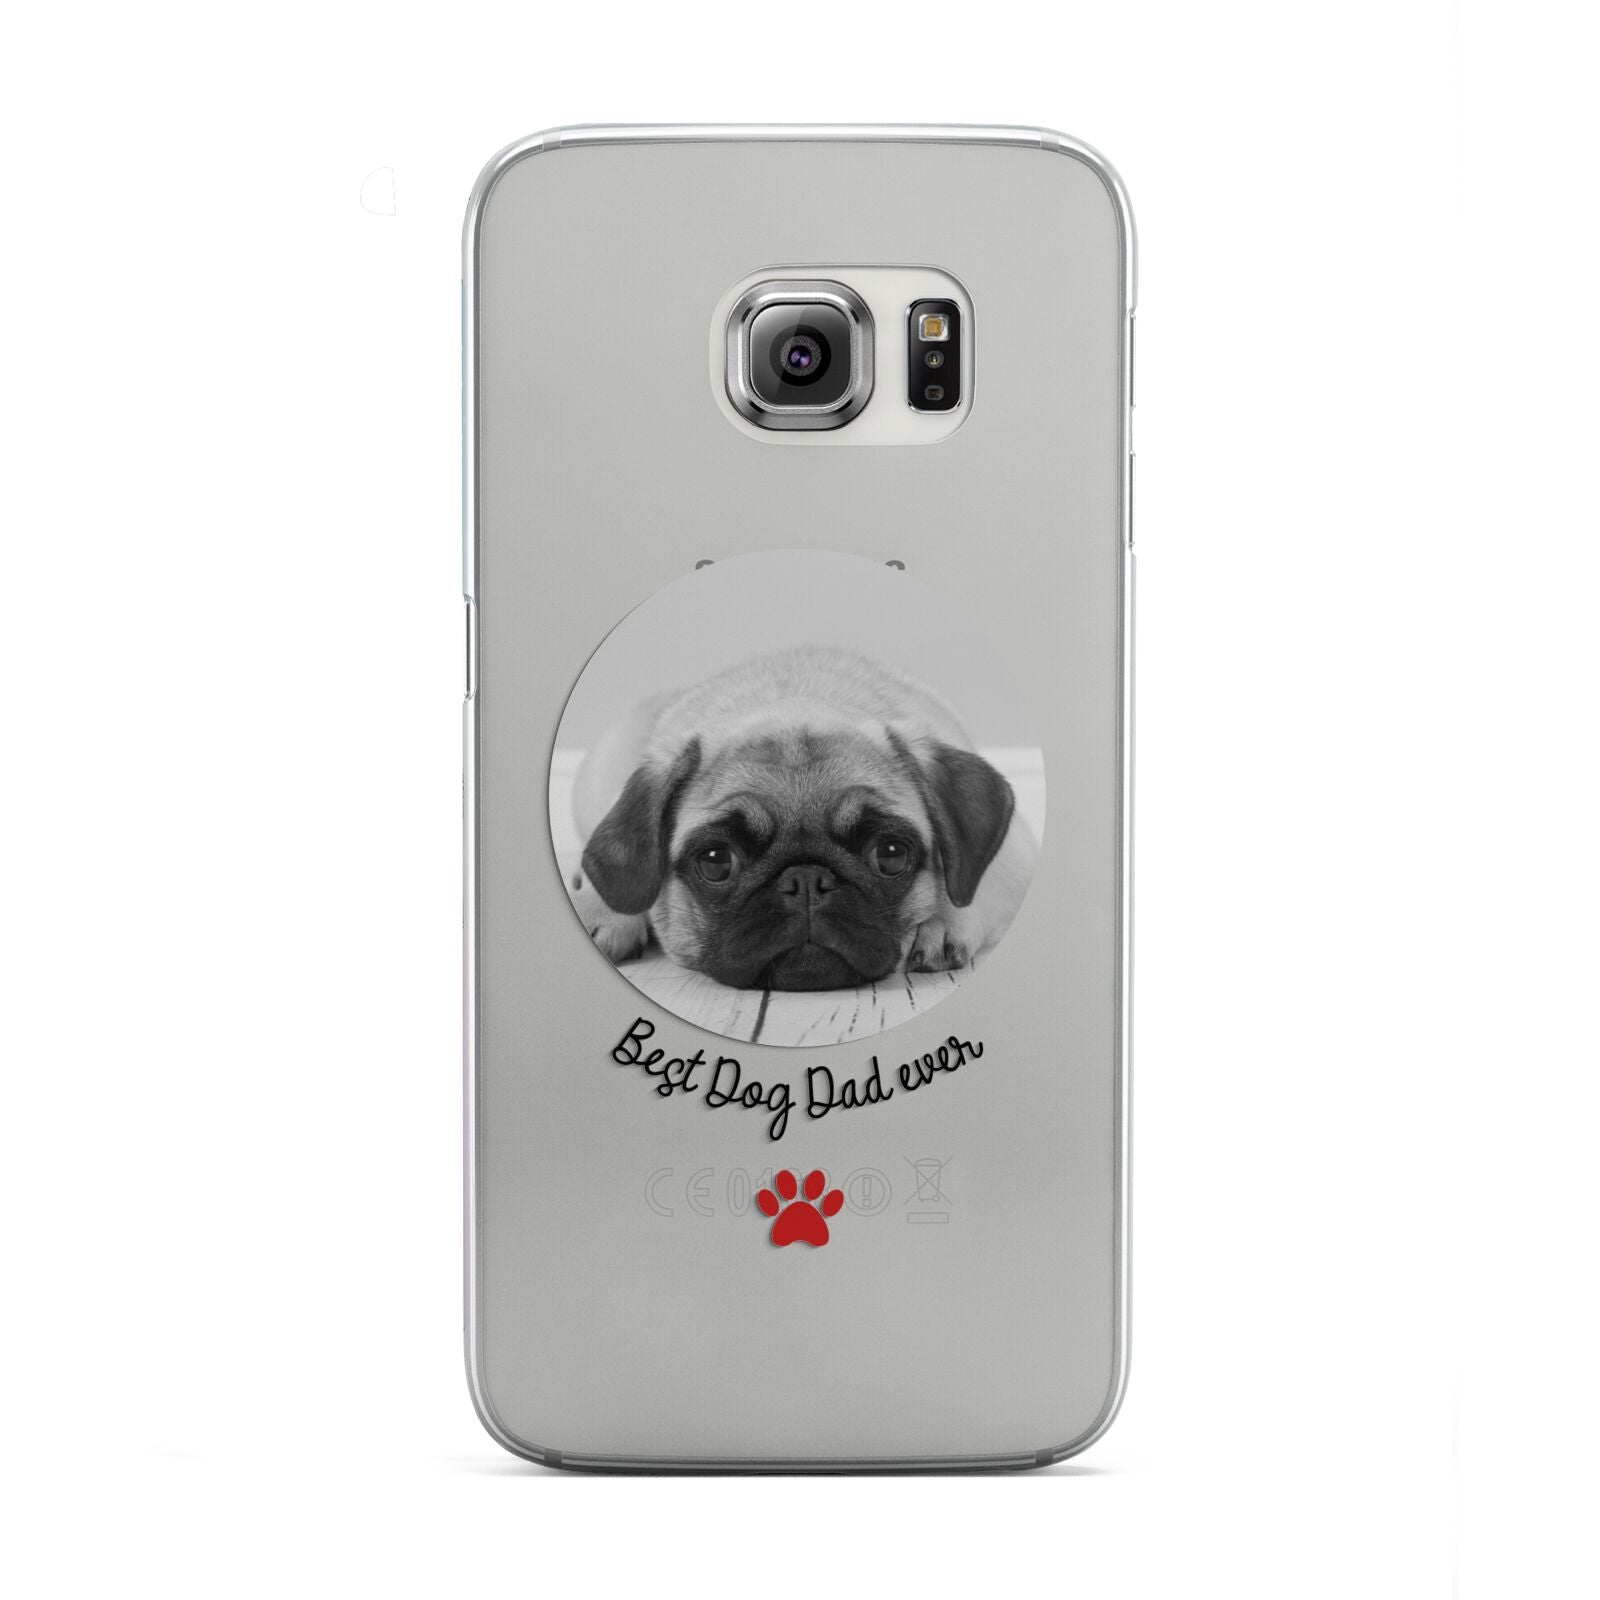 Best Dog Dad Ever Photo Upload Samsung Galaxy S6 Edge Case